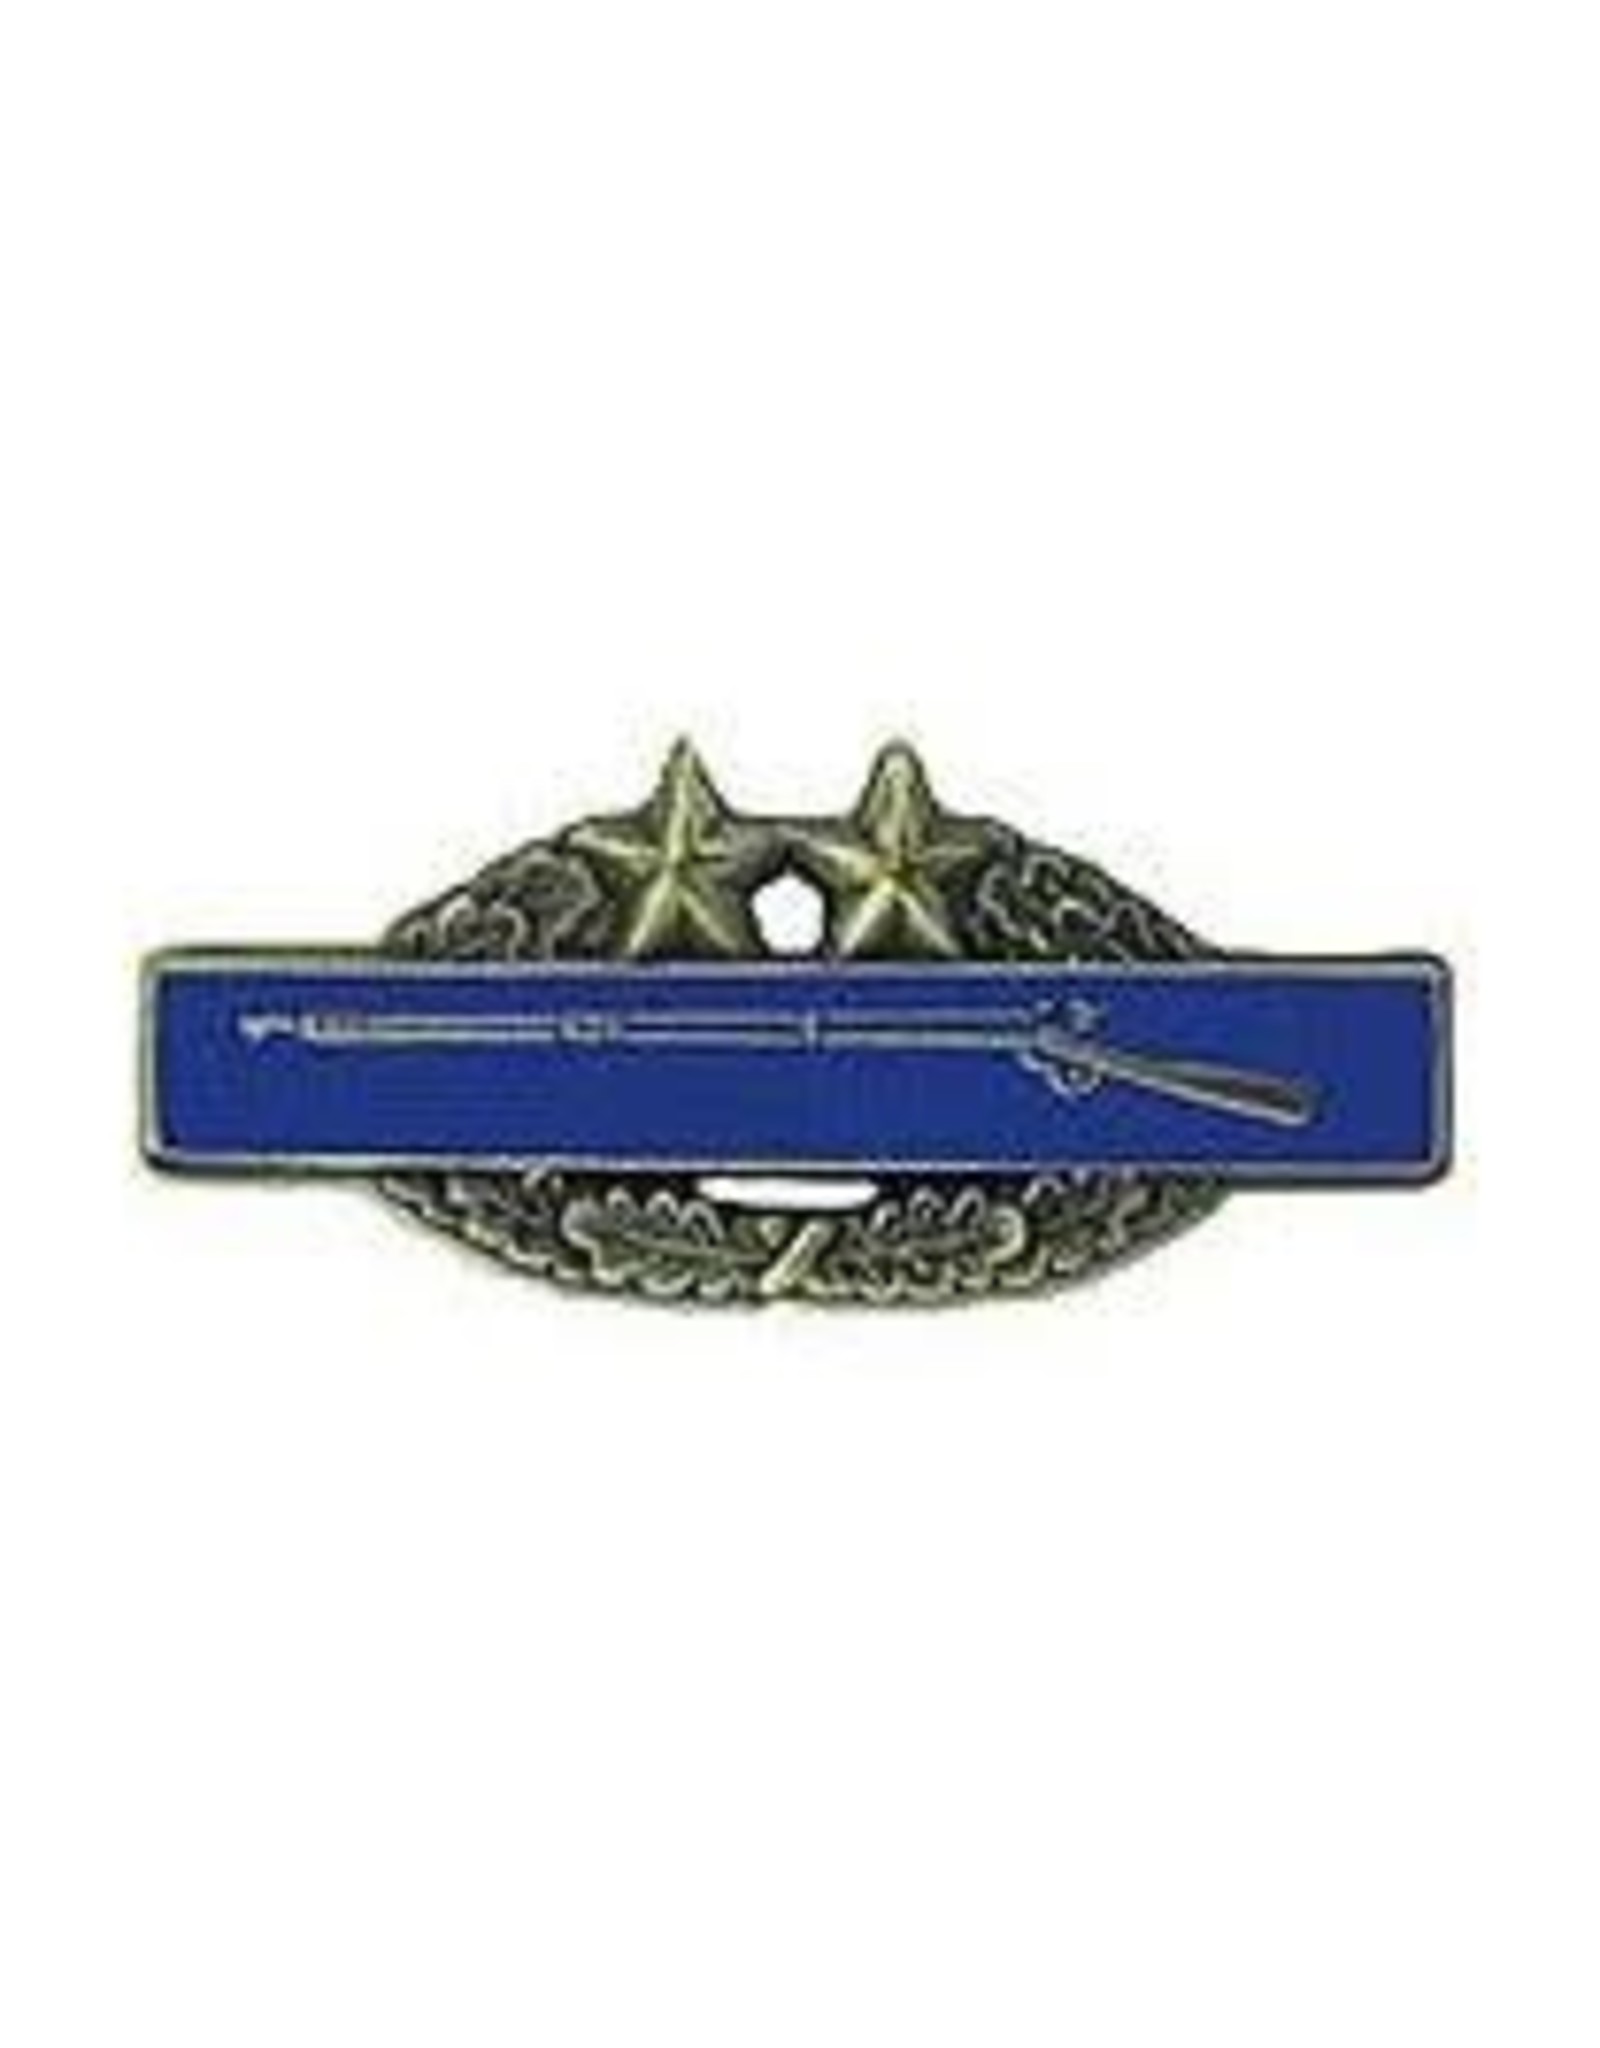 Pin - Army CIB 3rd Award Badge